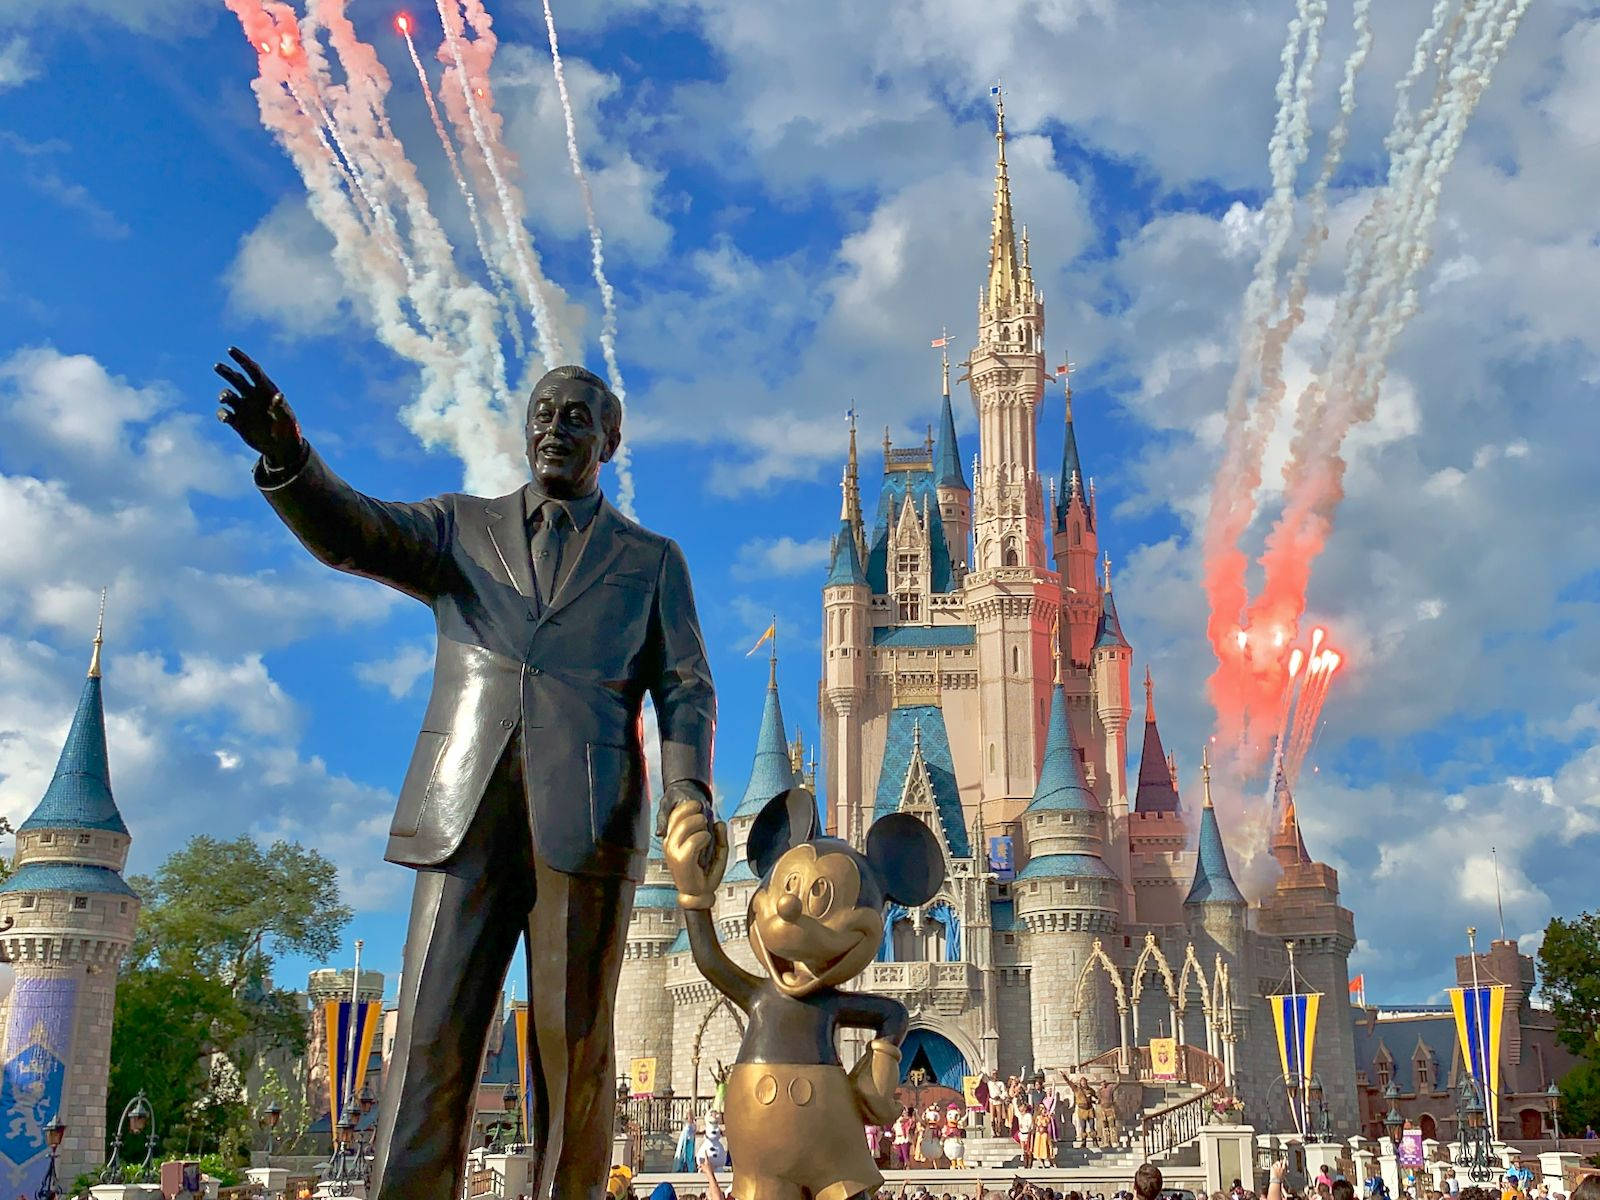 Magician's Fireworks, Epcot, Walt Disney World widescreen 